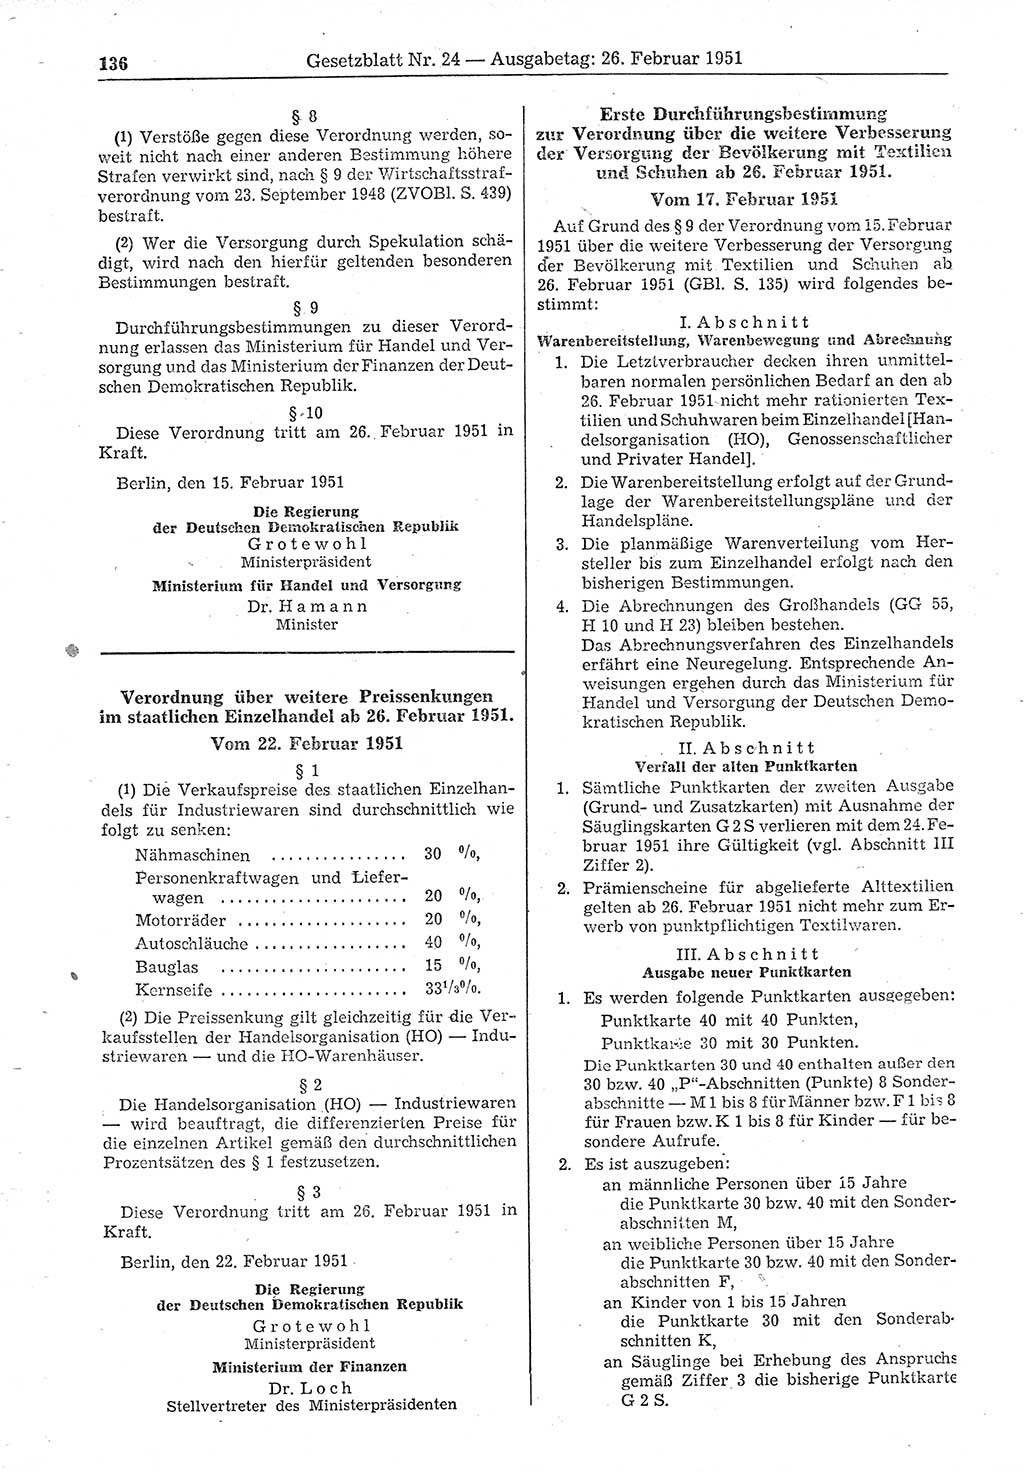 Gesetzblatt (GBl.) der Deutschen Demokratischen Republik (DDR) 1951, Seite 136 (GBl. DDR 1951, S. 136)